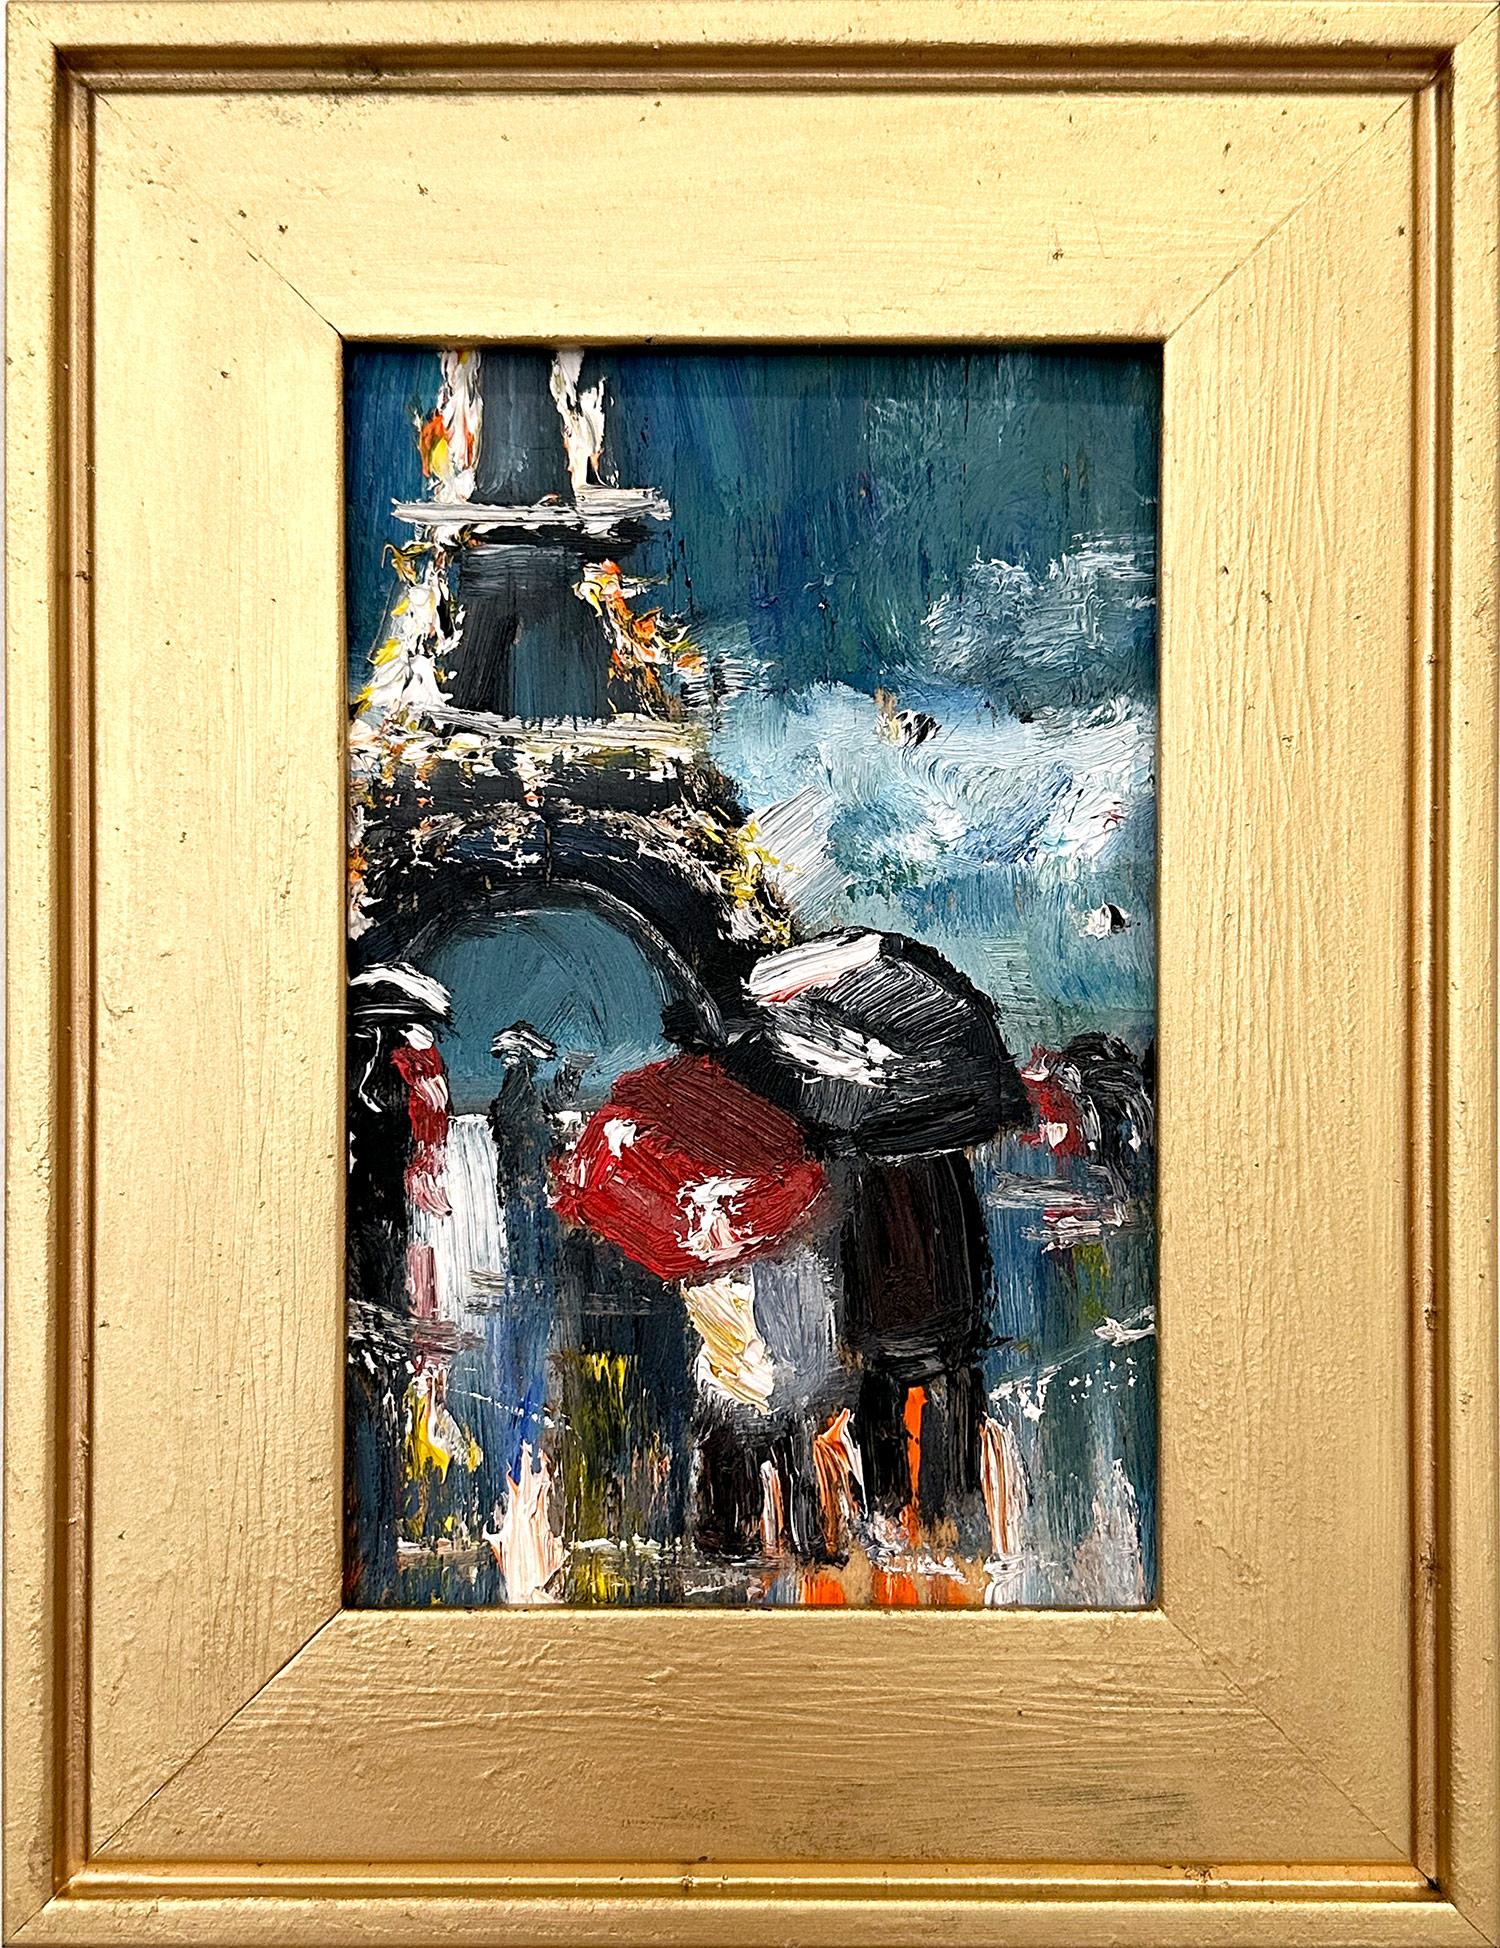 Figurative Painting Cindy Shaoul - « Lovers in the Rain », peinture à l'huile impressionniste représentant des personnages de la Tour Eiffel